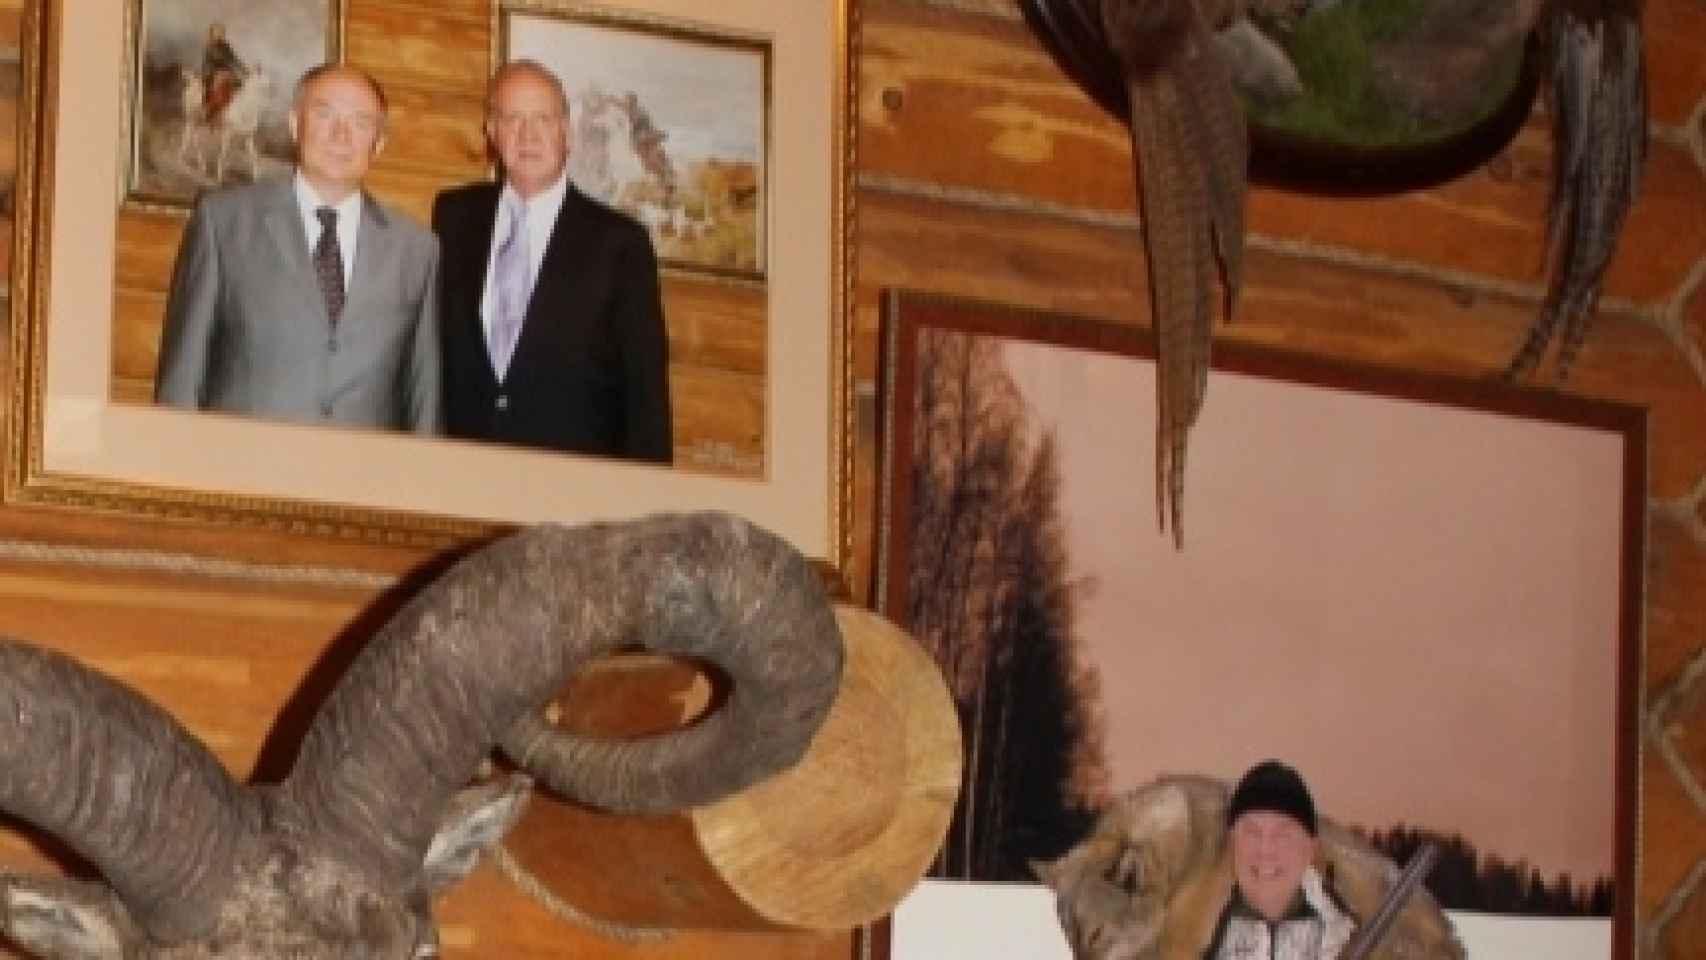 Fotos del gobernador expuestas en la Casa del Urogallo; con el rey cuando estuvo allí, y en una cacería de lobos.